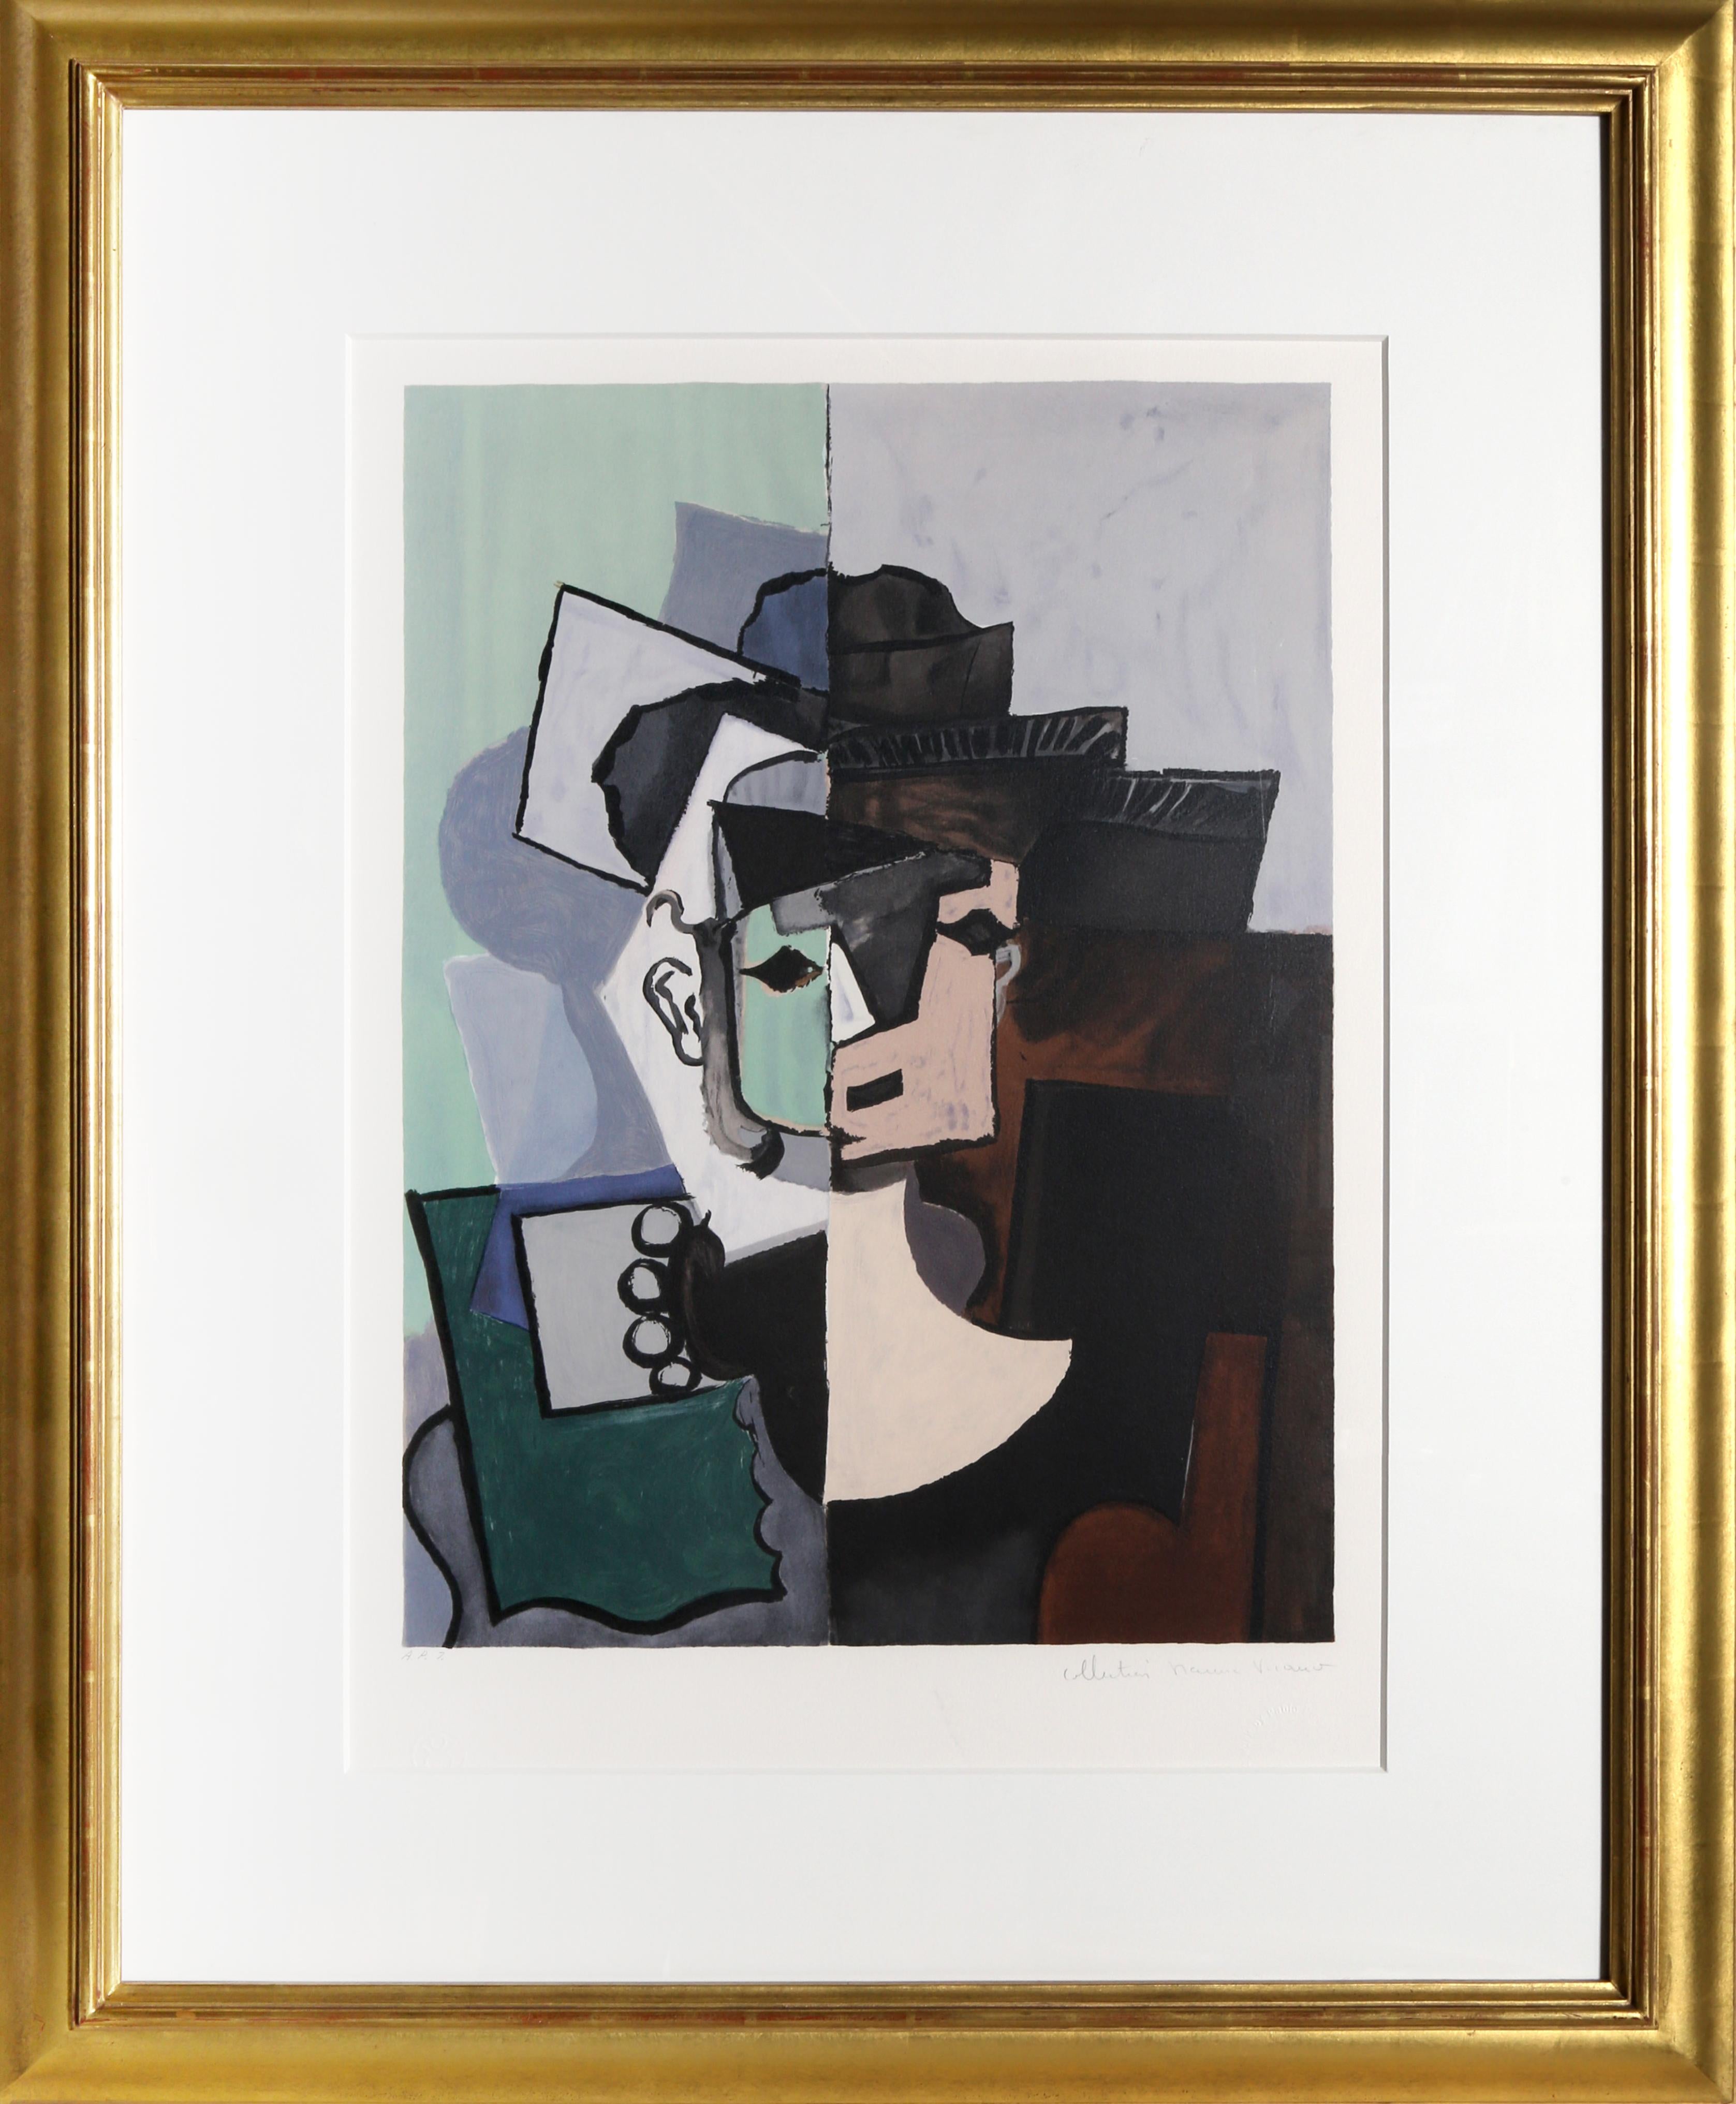 Une lithographie provenant de la Collection SALE de Marina Picasso d'après le tableau de Pablo Picasso "Portrait de Face sur Fond Rose et Vert".  La peinture originale a été achevée en 1917. Dans les années 1970, après la mort de Picasso, Marina